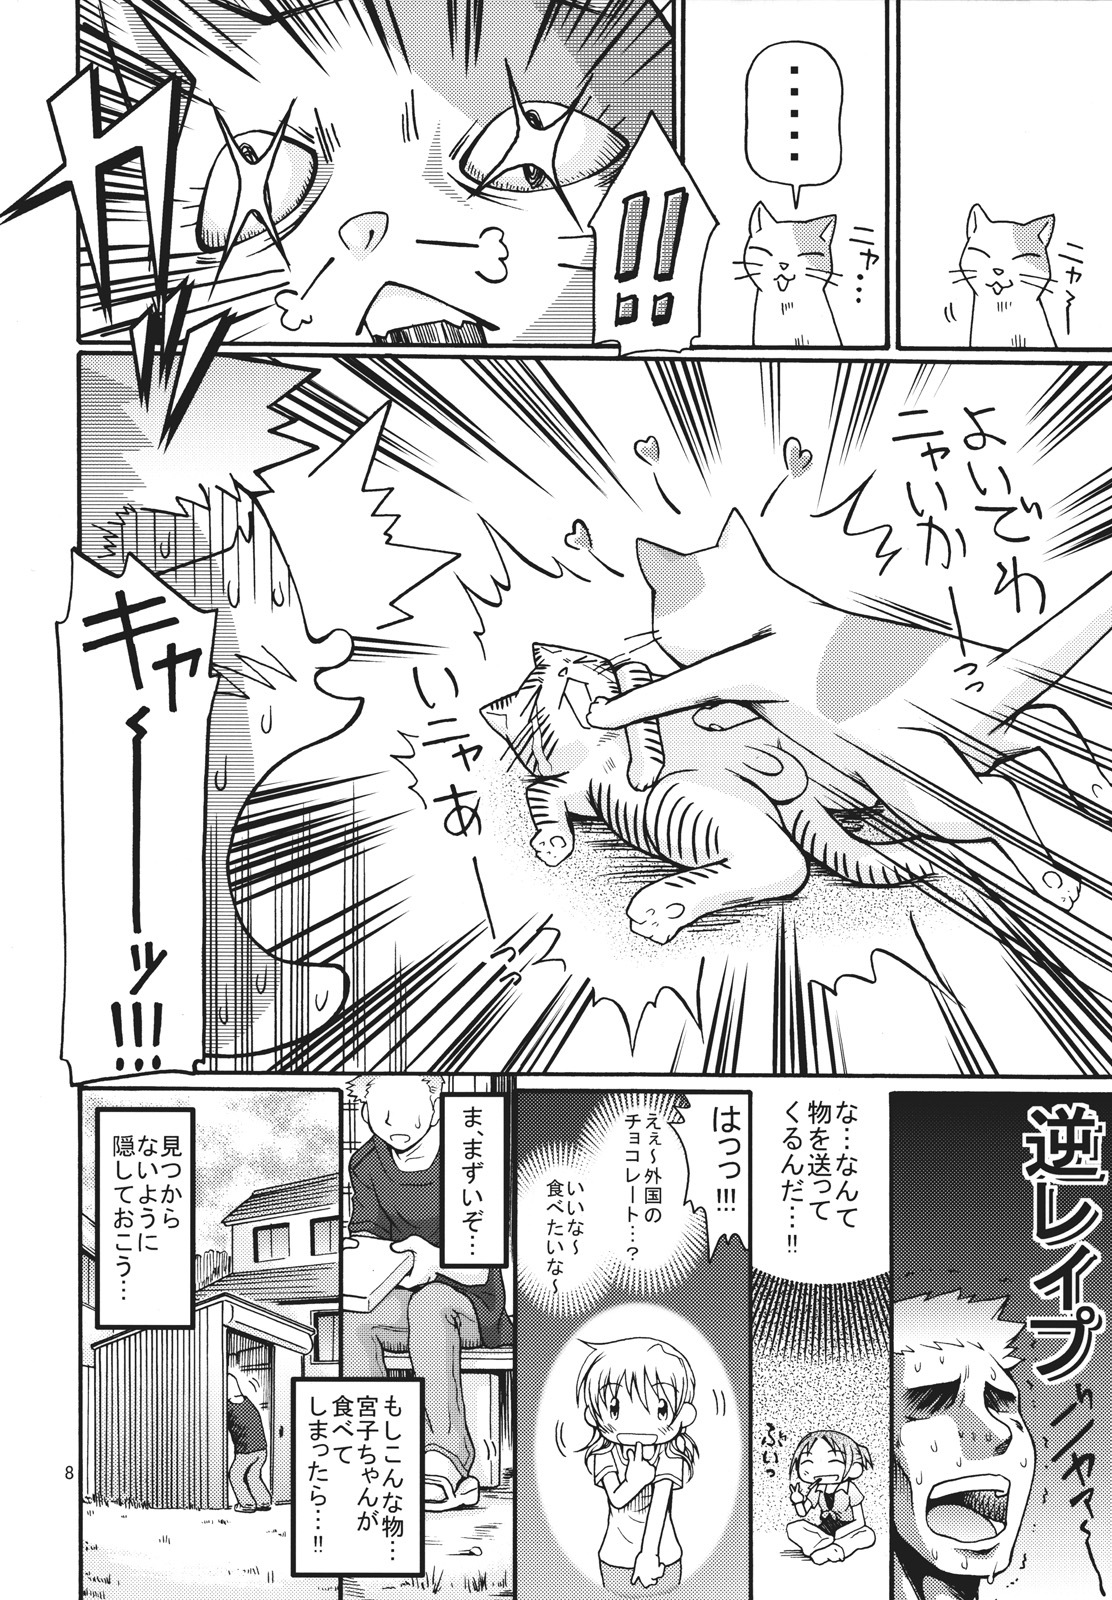 [FESTA. (Yoshitani Ganjitsu)] Taiyou Shoujo (Hidamari Sketch) [2008-03-16] page 7 full